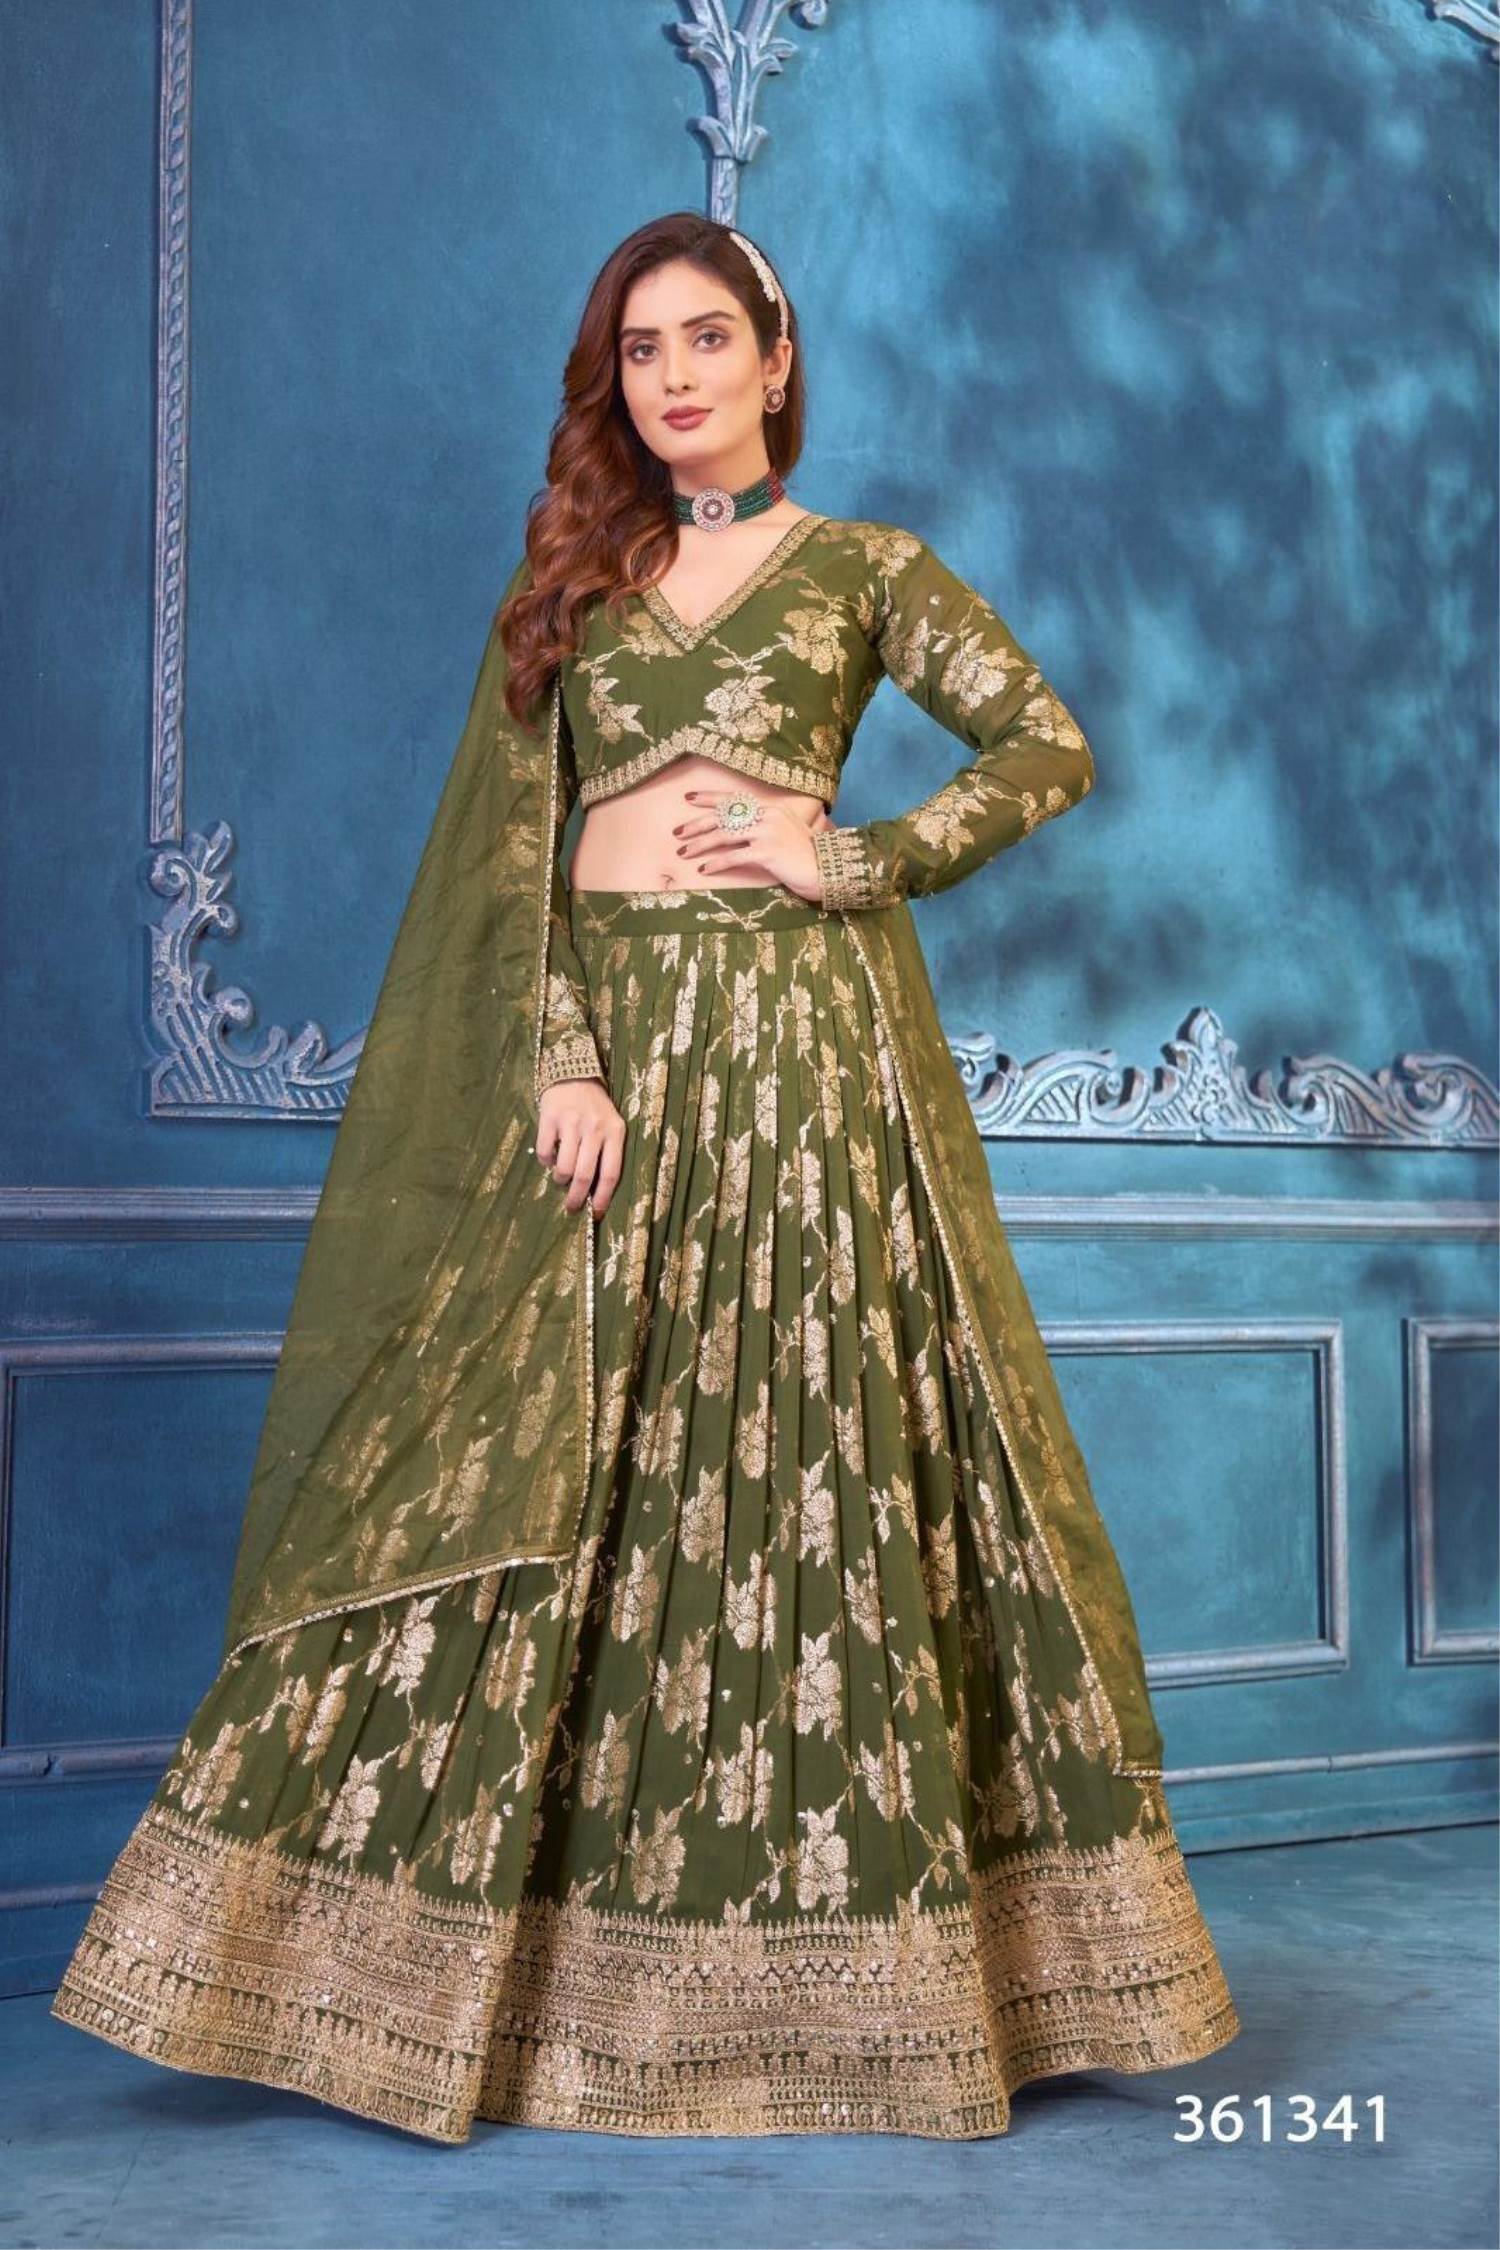 Mehndi dress / Mehndi bridal lehenga / Pakistani Mehndi dress design -  YouTube